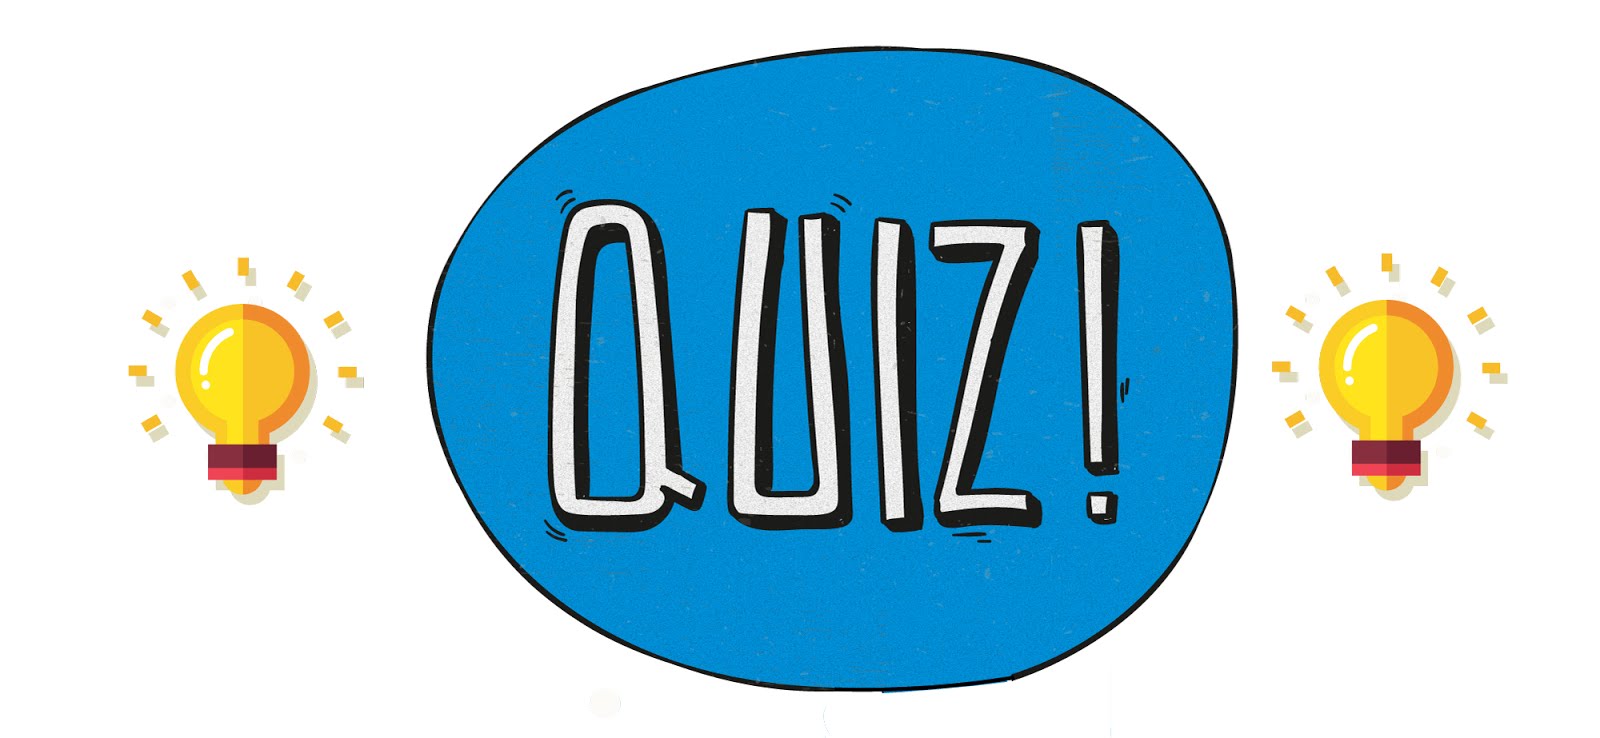 Trivia #1: ¿Sabés de bandejas portacables?